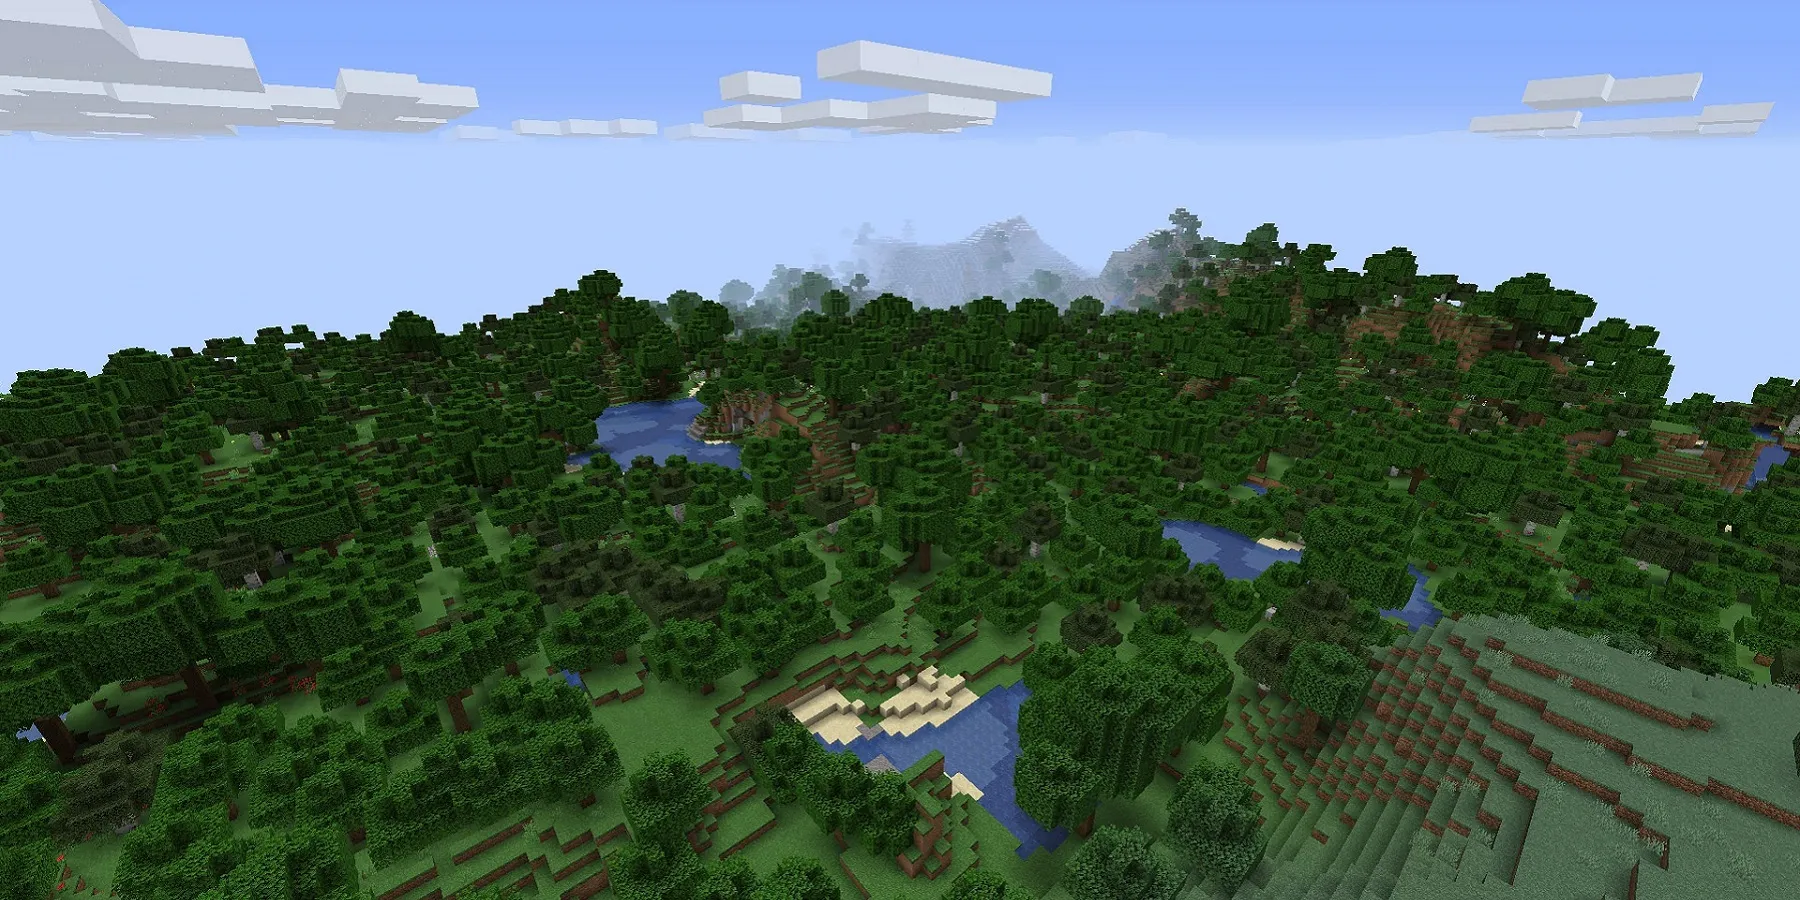 imagem de Minecraft mostrando uma imagem panorâmica do mundo aberto, que inclui uma floresta.